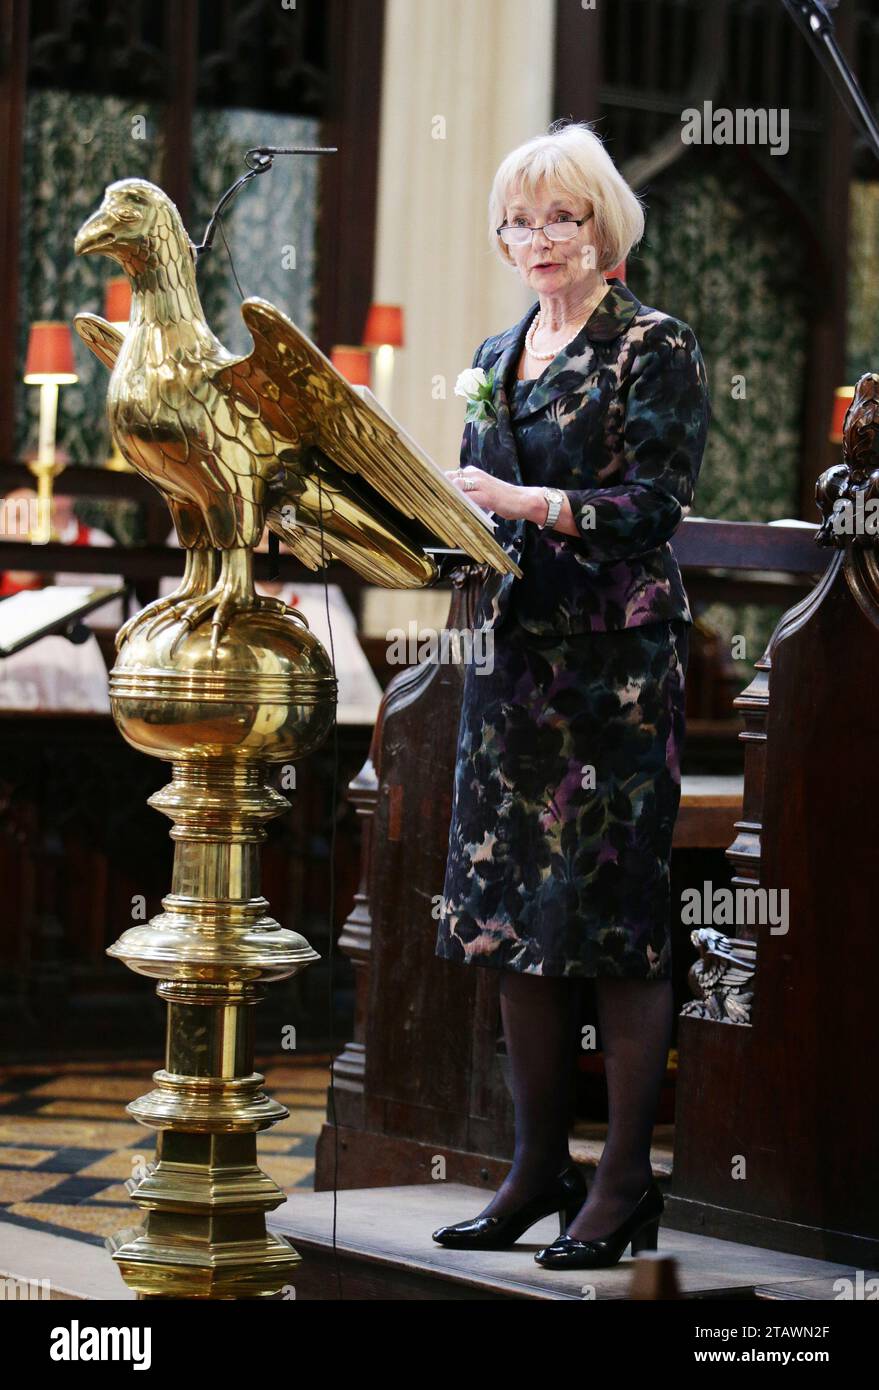 File foto datato 20/06/16 della baronessa Glenys Kinnock che parla durante un servizio di preghiera e memoria per commemorare Jo Cox MP alla St Margaret's Church, Londra. La baronessa Glenys Kinnock di Holyhead, ex ministro, eurodeputata e moglie dell'ex leader laburista Lord Kinnock, è morta pacificamente nel sonno domenica, come ha affermato la sua famiglia in una dichiarazione. Data di emissione: Domenica 3 dicembre 2023. Foto Stock